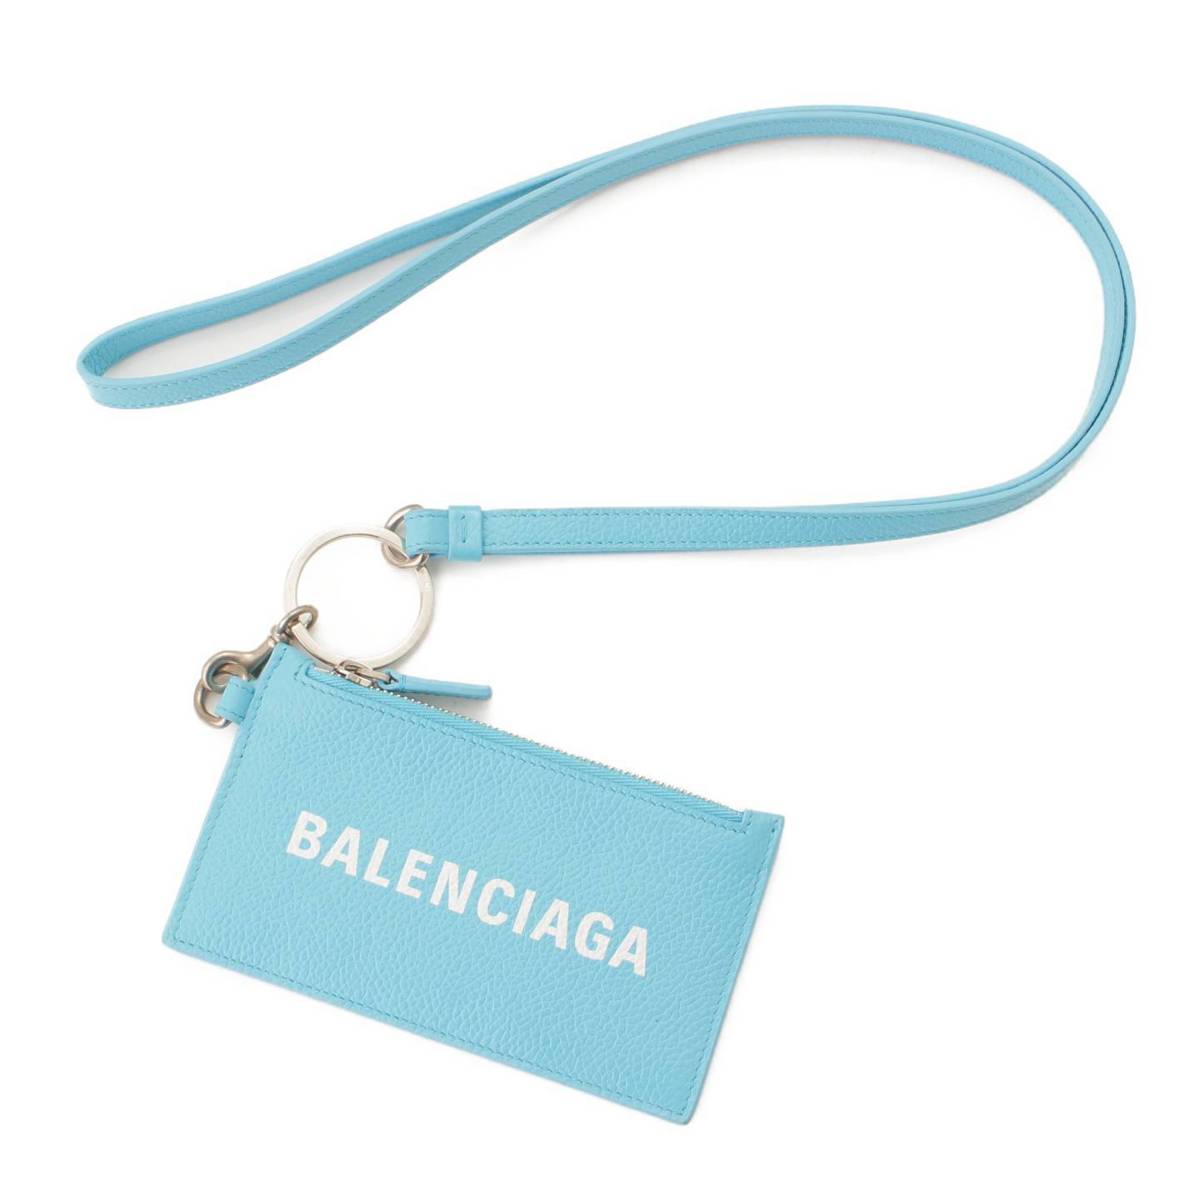 Balenciaga バレンシアガ レザー ネックストラップ付 カード コインケース ネオンイエロー gy